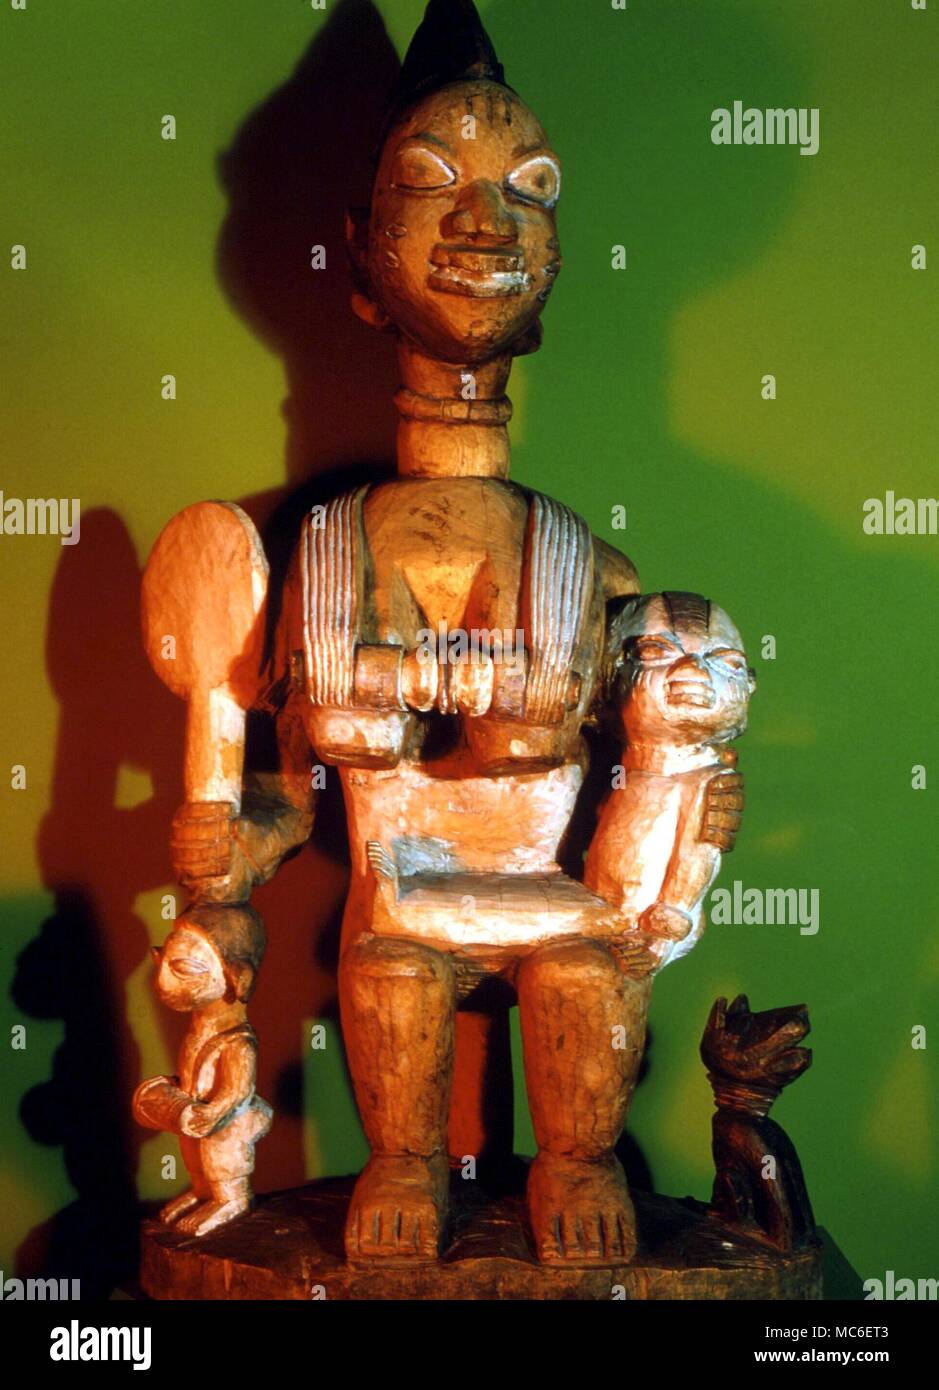 Afrikanische Magie - Abiamo magische Figuren, von der Yoruba. Frau mit Kind und Magic Mirror. Horniman Museum Stockfoto